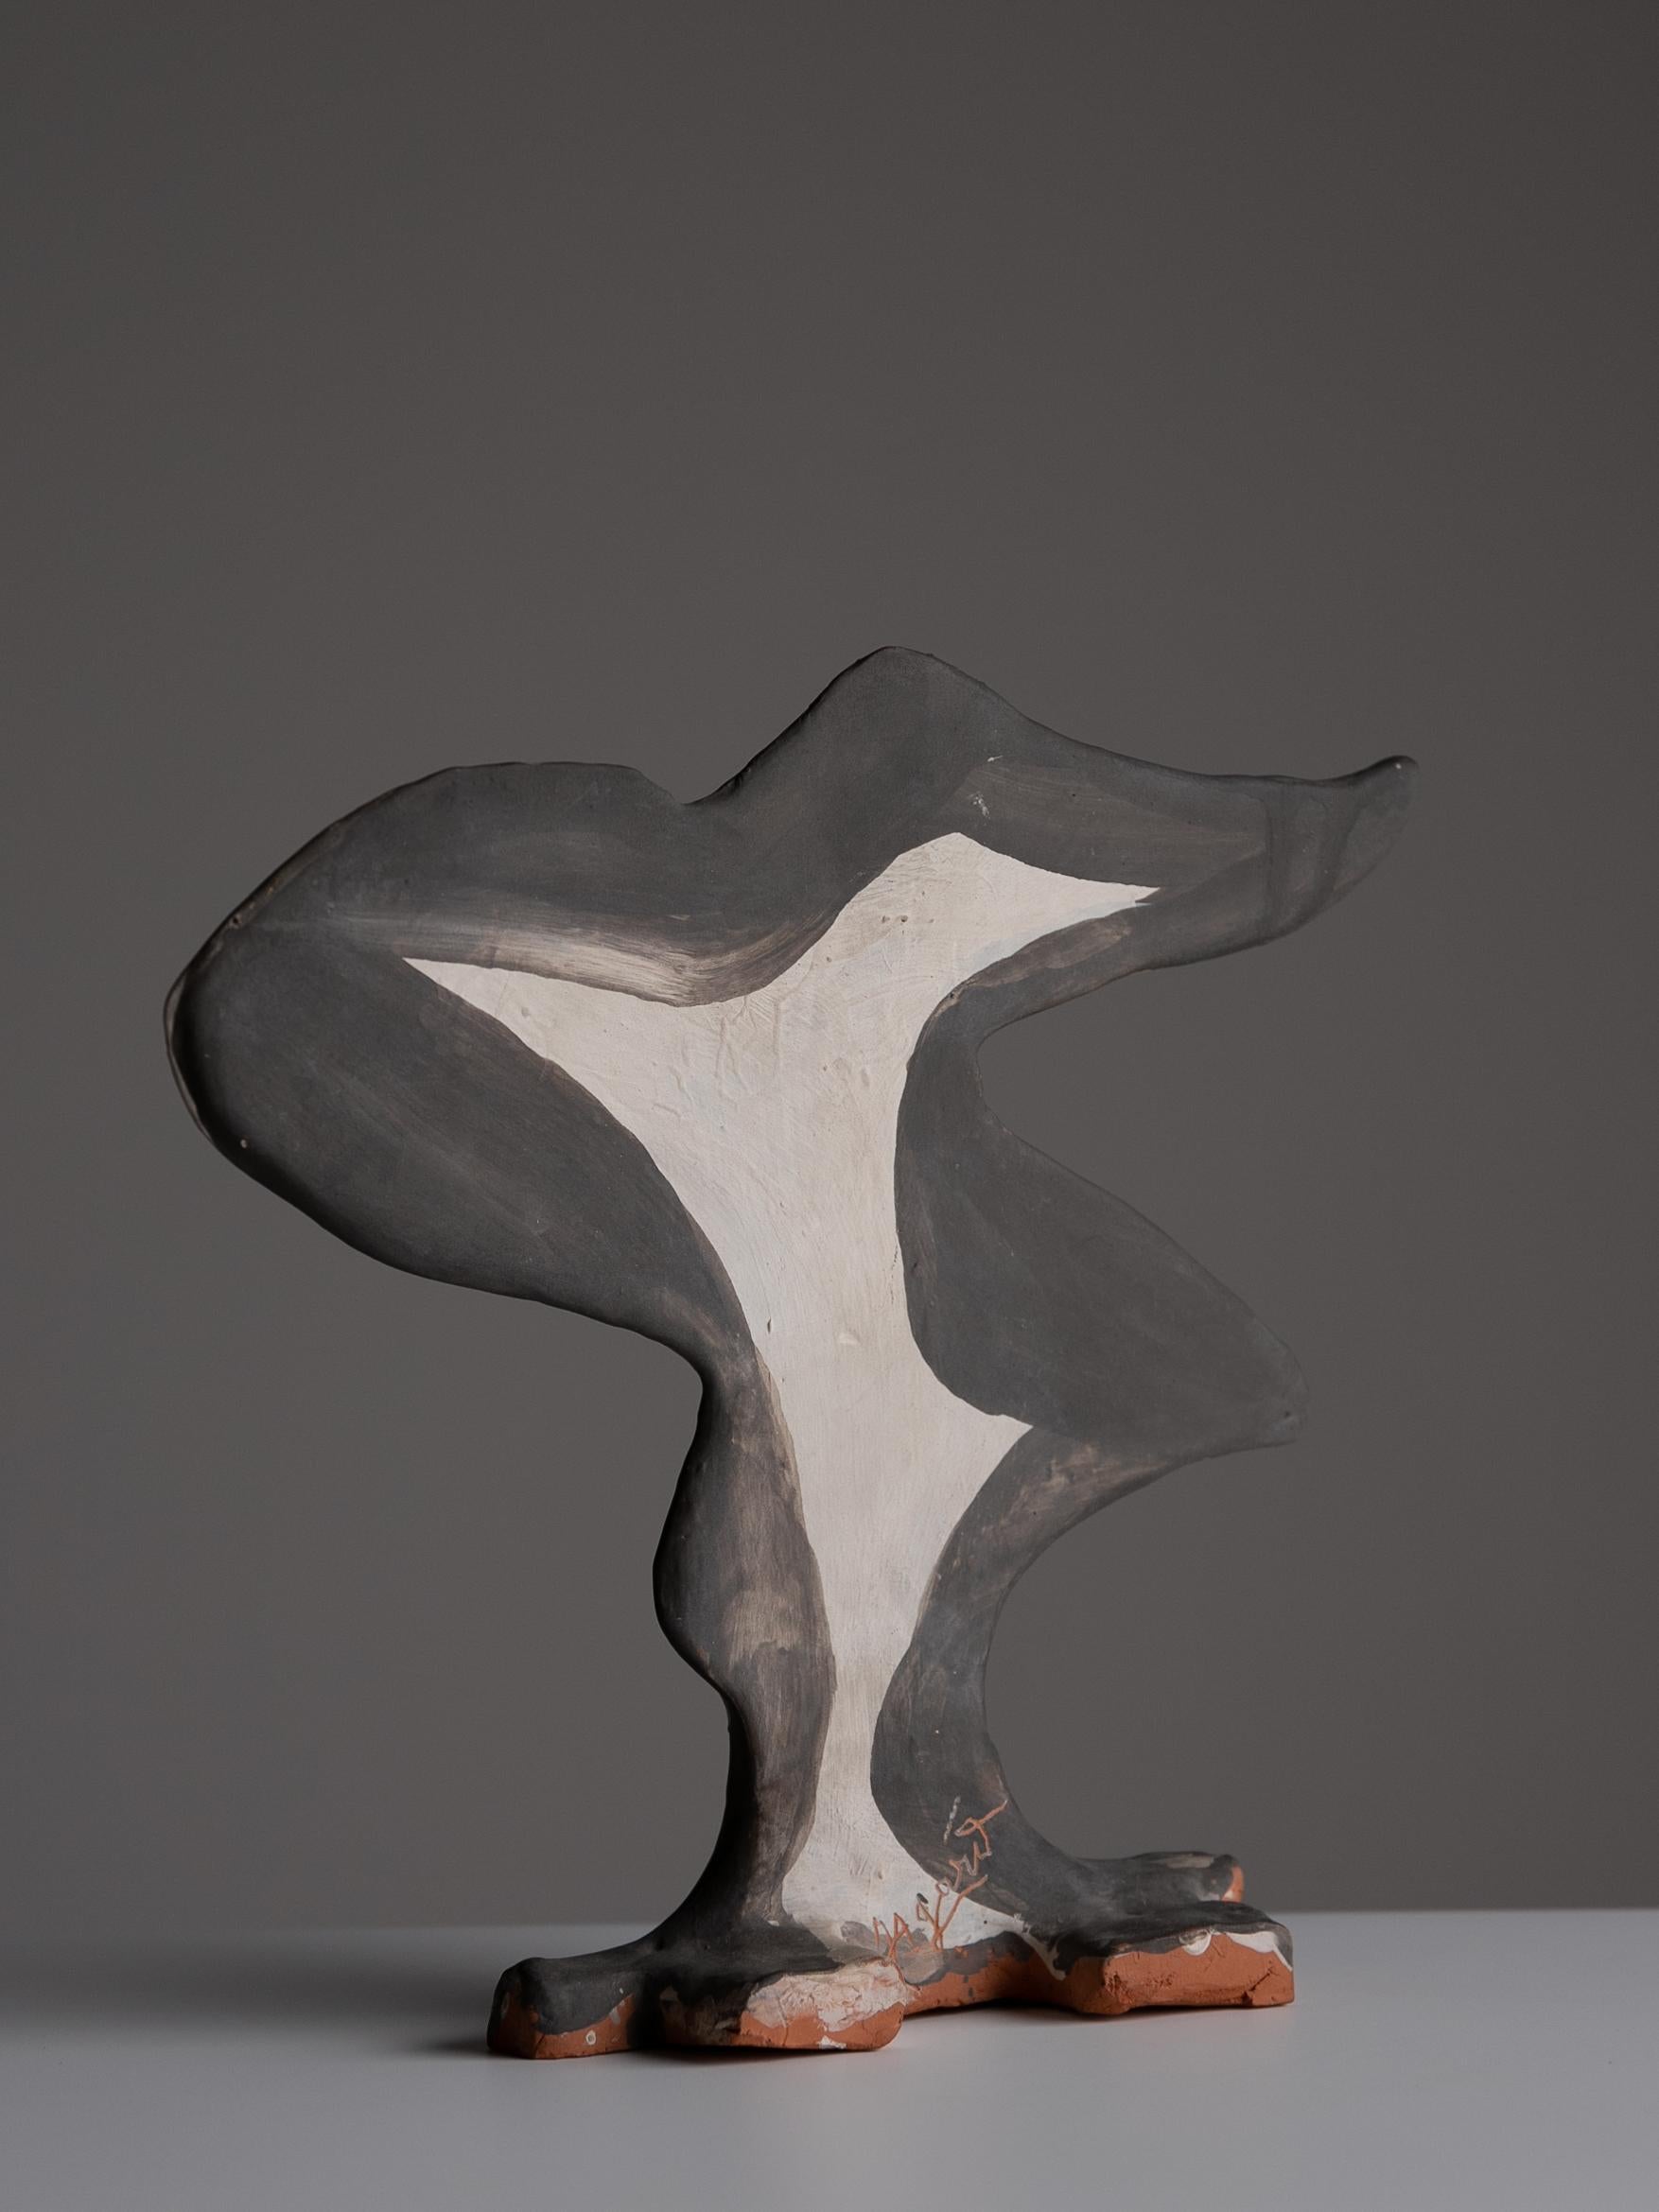 Sculpture abstraite de Jules Agard

Sculpture abstraite peinte à la main par Jules Agard en terre cuite Valaris des années 1950.

Jules Agard
Jules Agard, un potier français actif des années 1940 aux années 1970, était un potier connu à